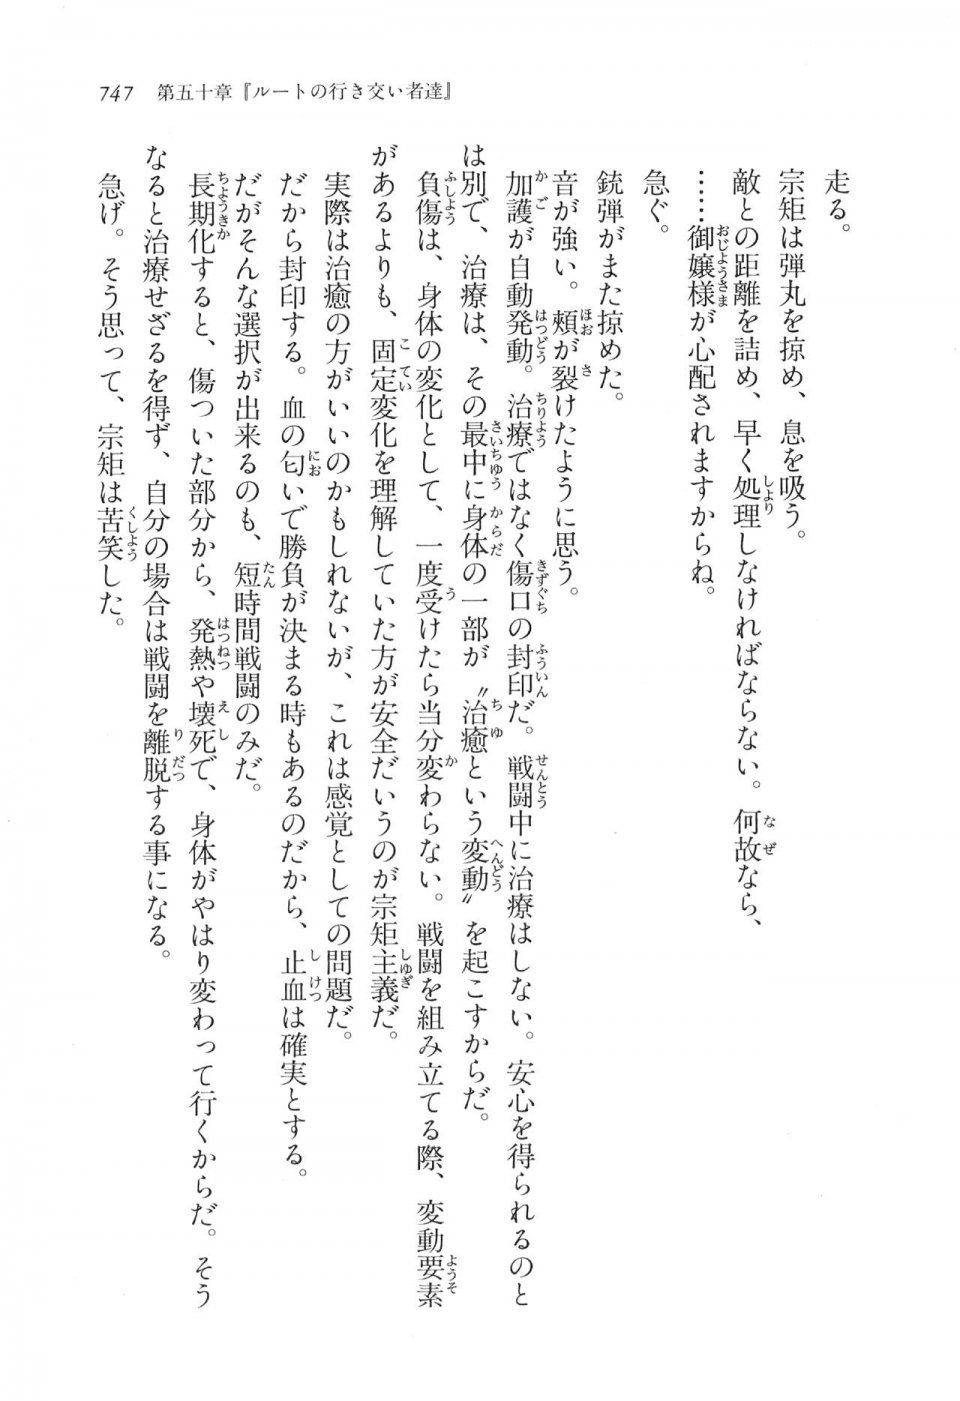 Kyoukai Senjou no Horizon LN Vol 17(7B) - Photo #749